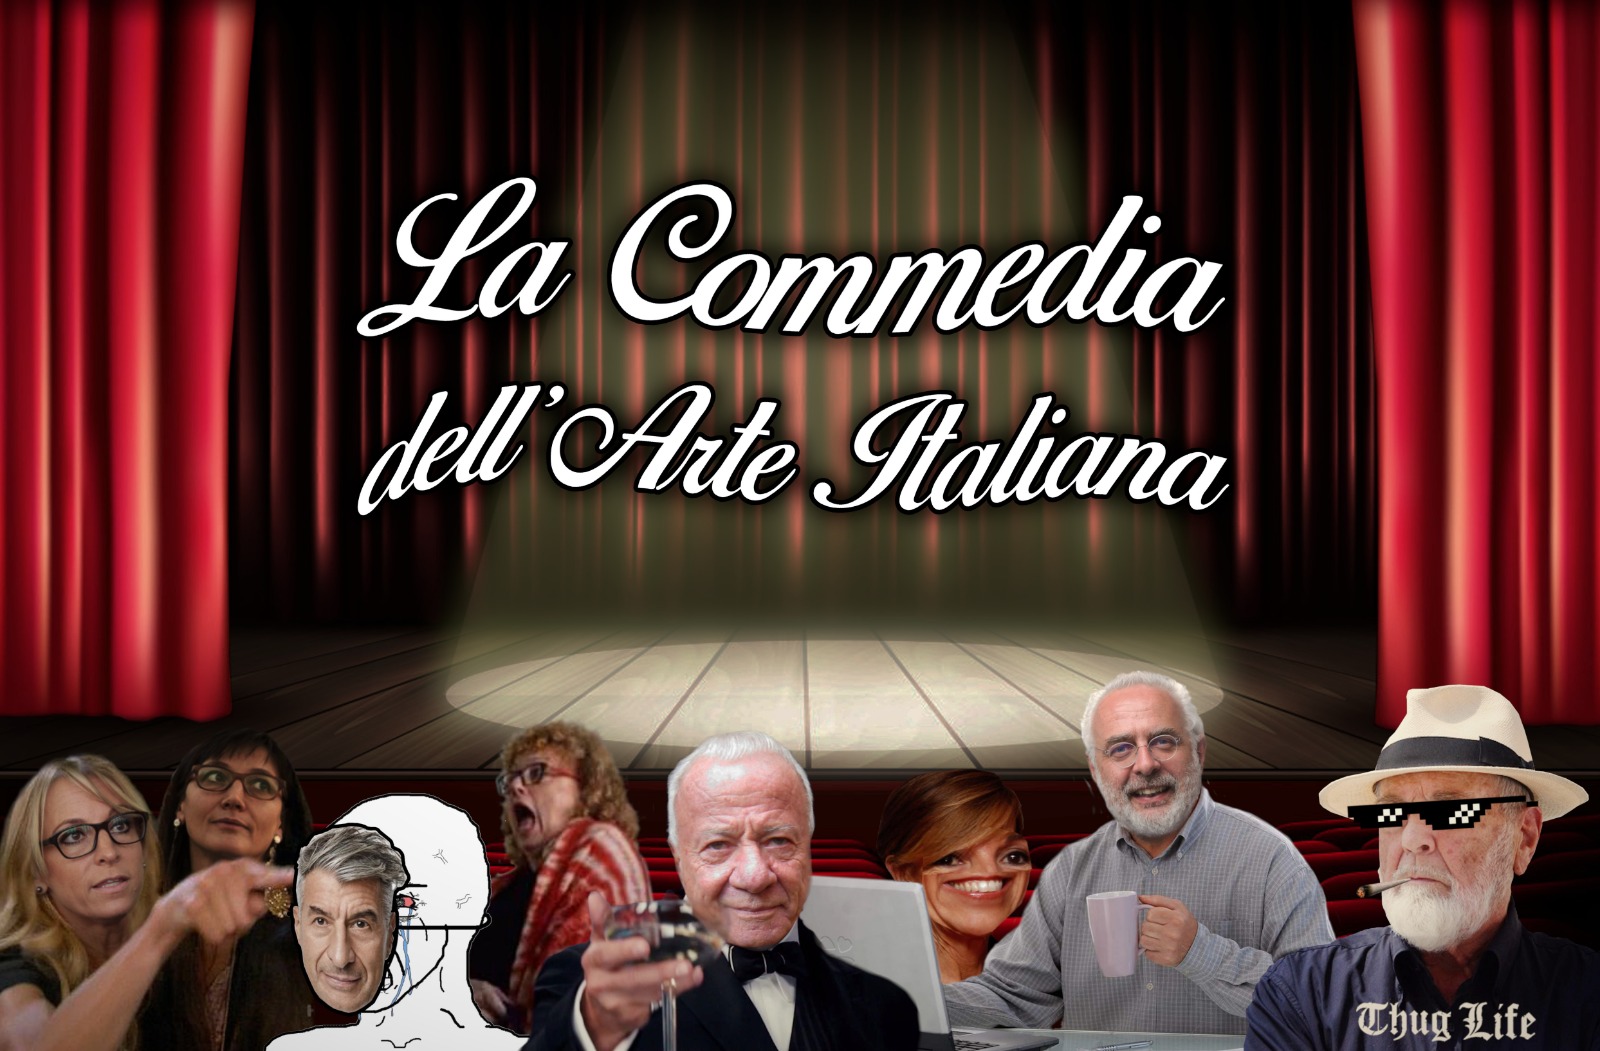 Giulio Alvigini, "La commedia dell'arte italiana", cover della nuova rubrica Osservatorio futura